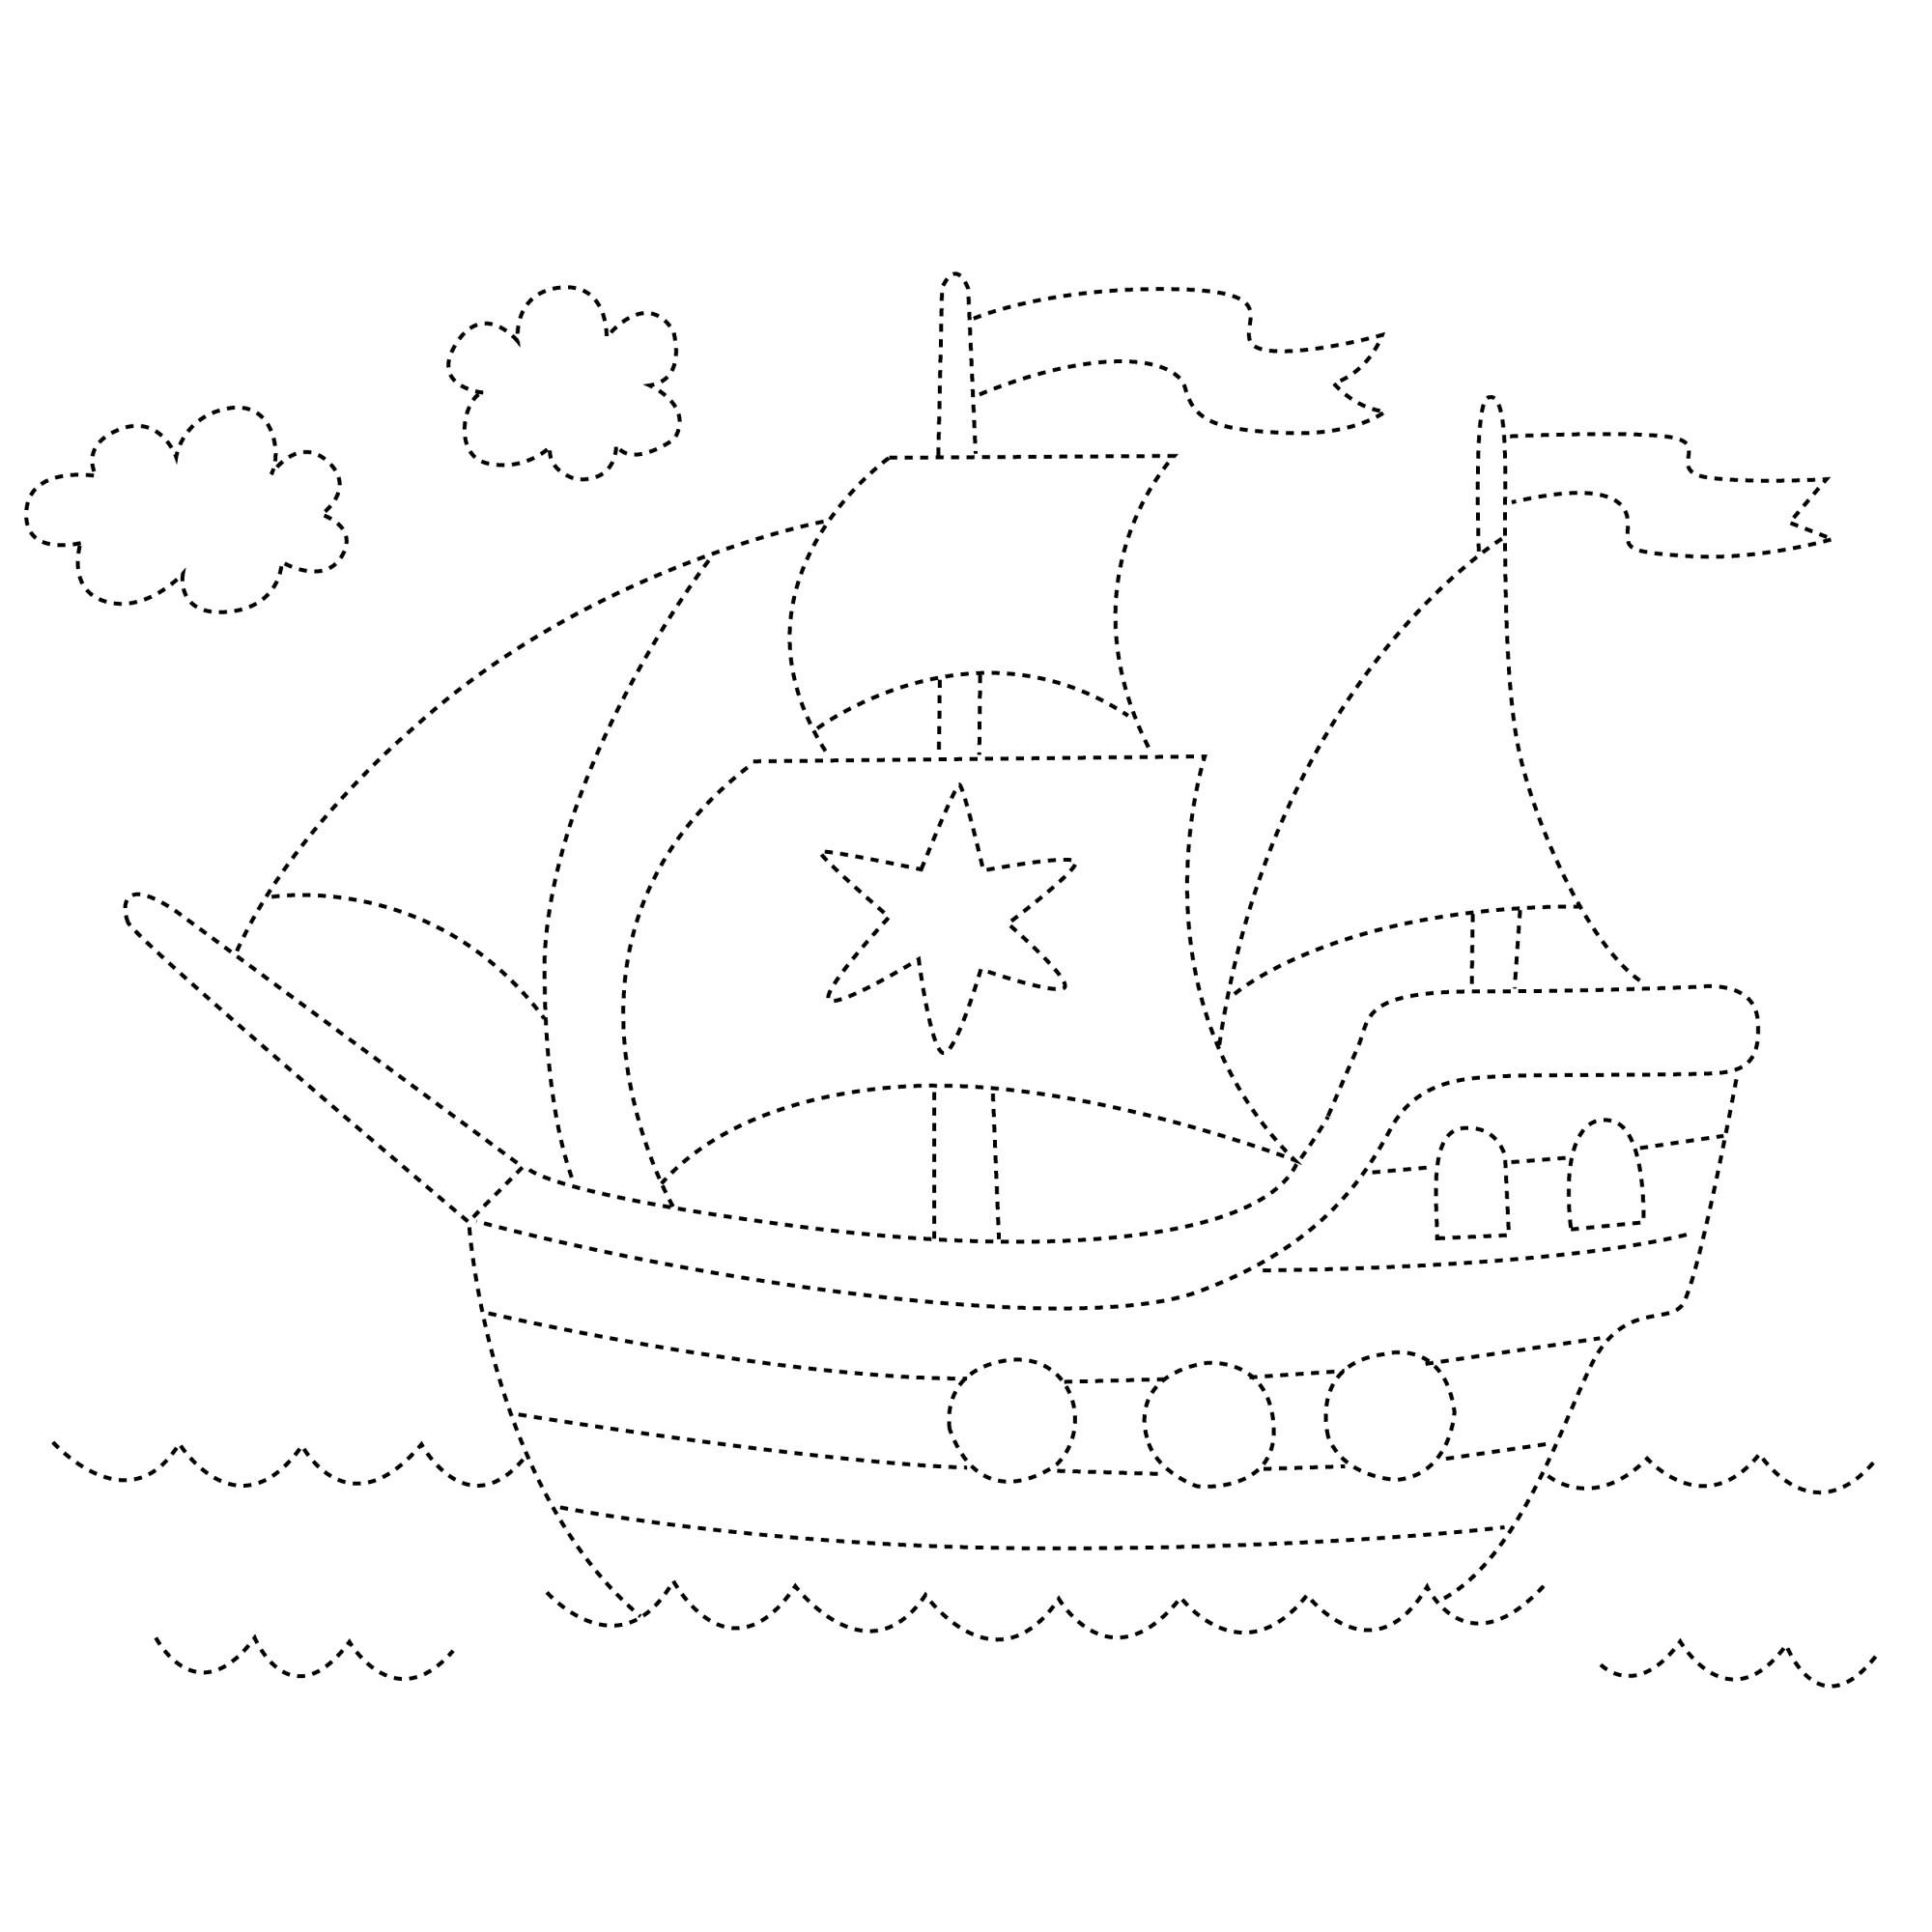 Раскраска для детей: корабль по точкам со звездой на парусе